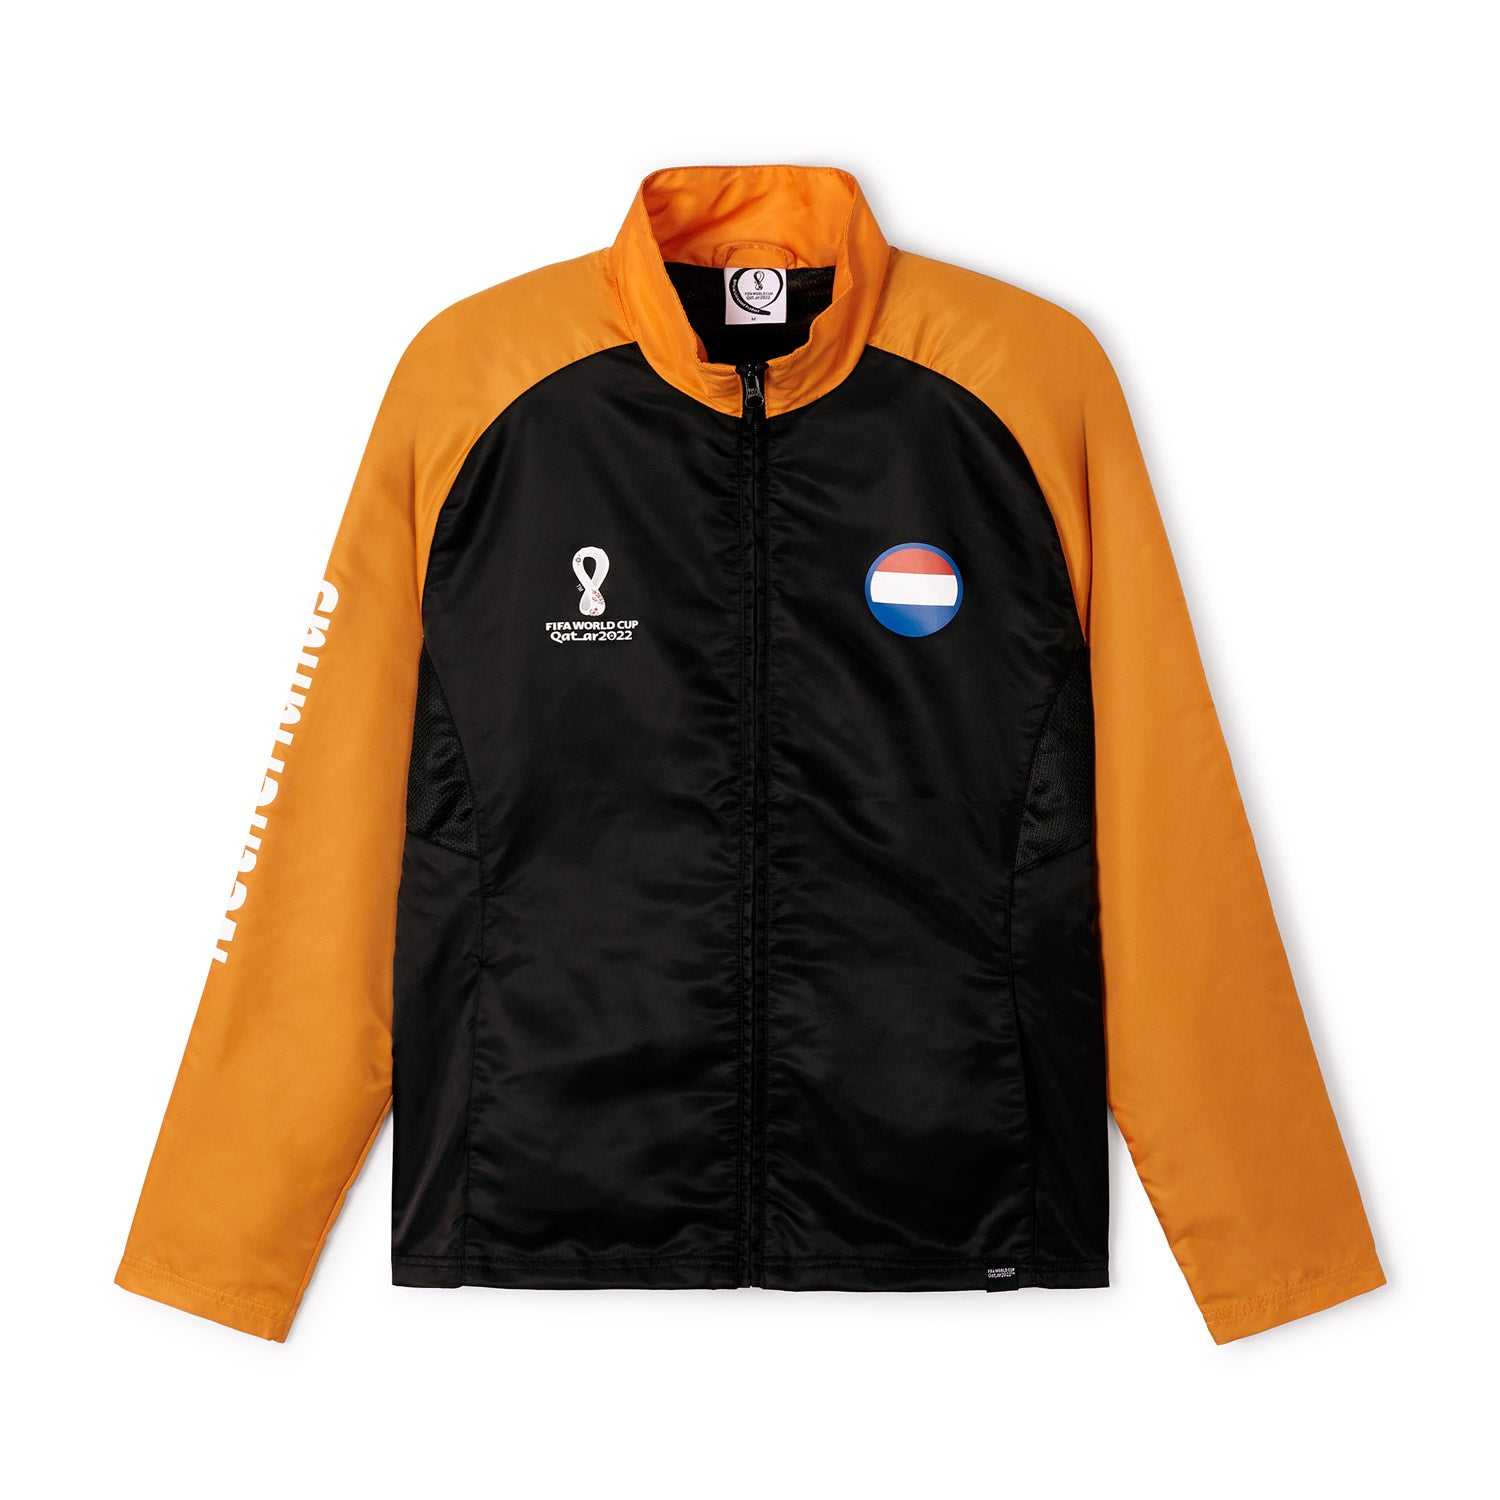 2022 World Cup Netherlands Black Raglan Jacket - Mens